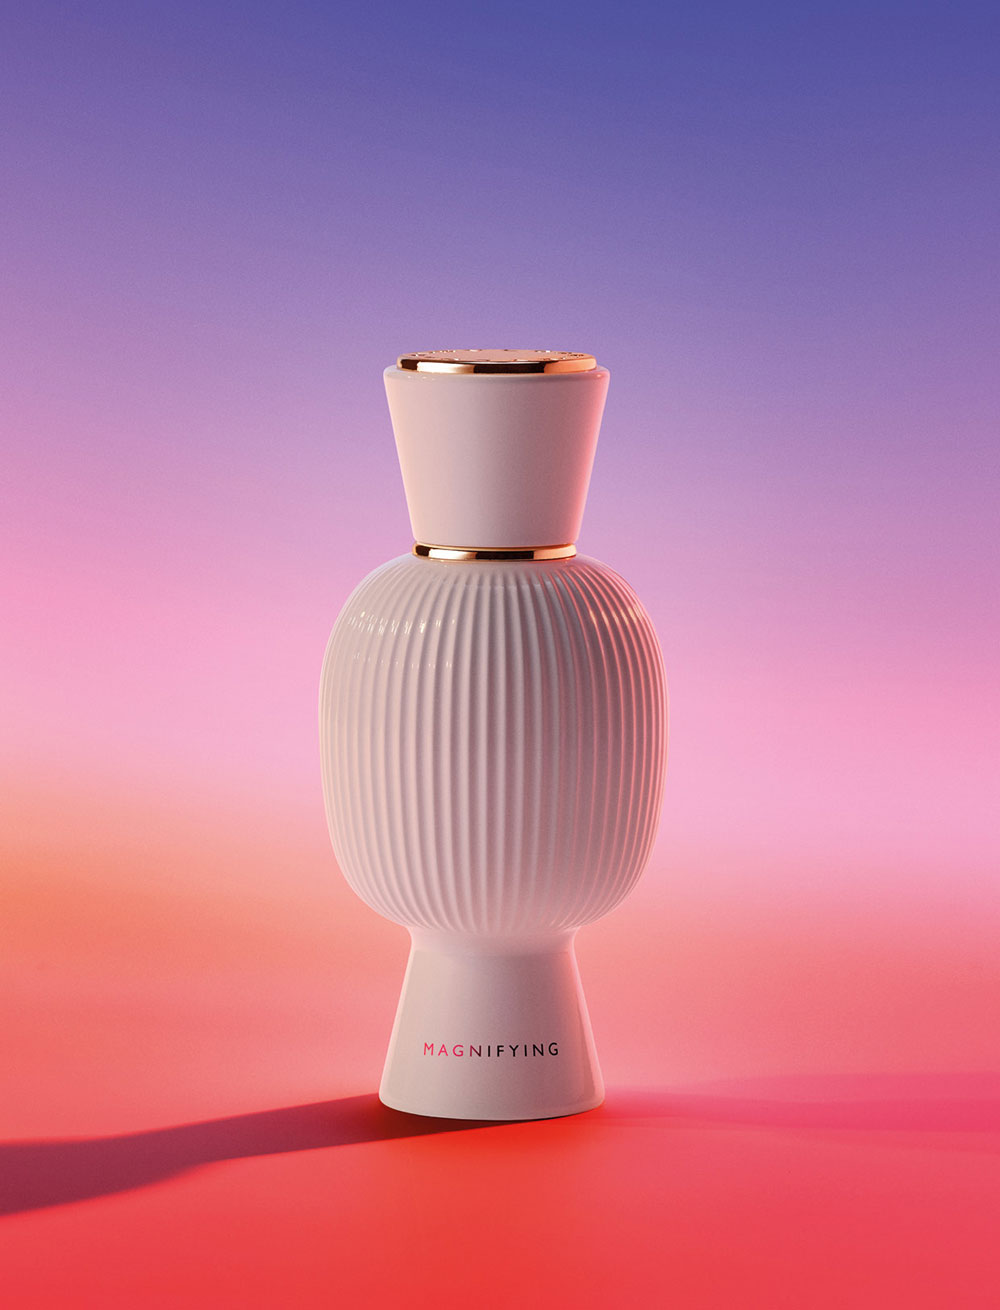 Die neue Parfum-Linie Allegra von Bvlgari fängt typisch italienische Momente ein und ermöglicht eine personalisierte Dufterfahrung. 